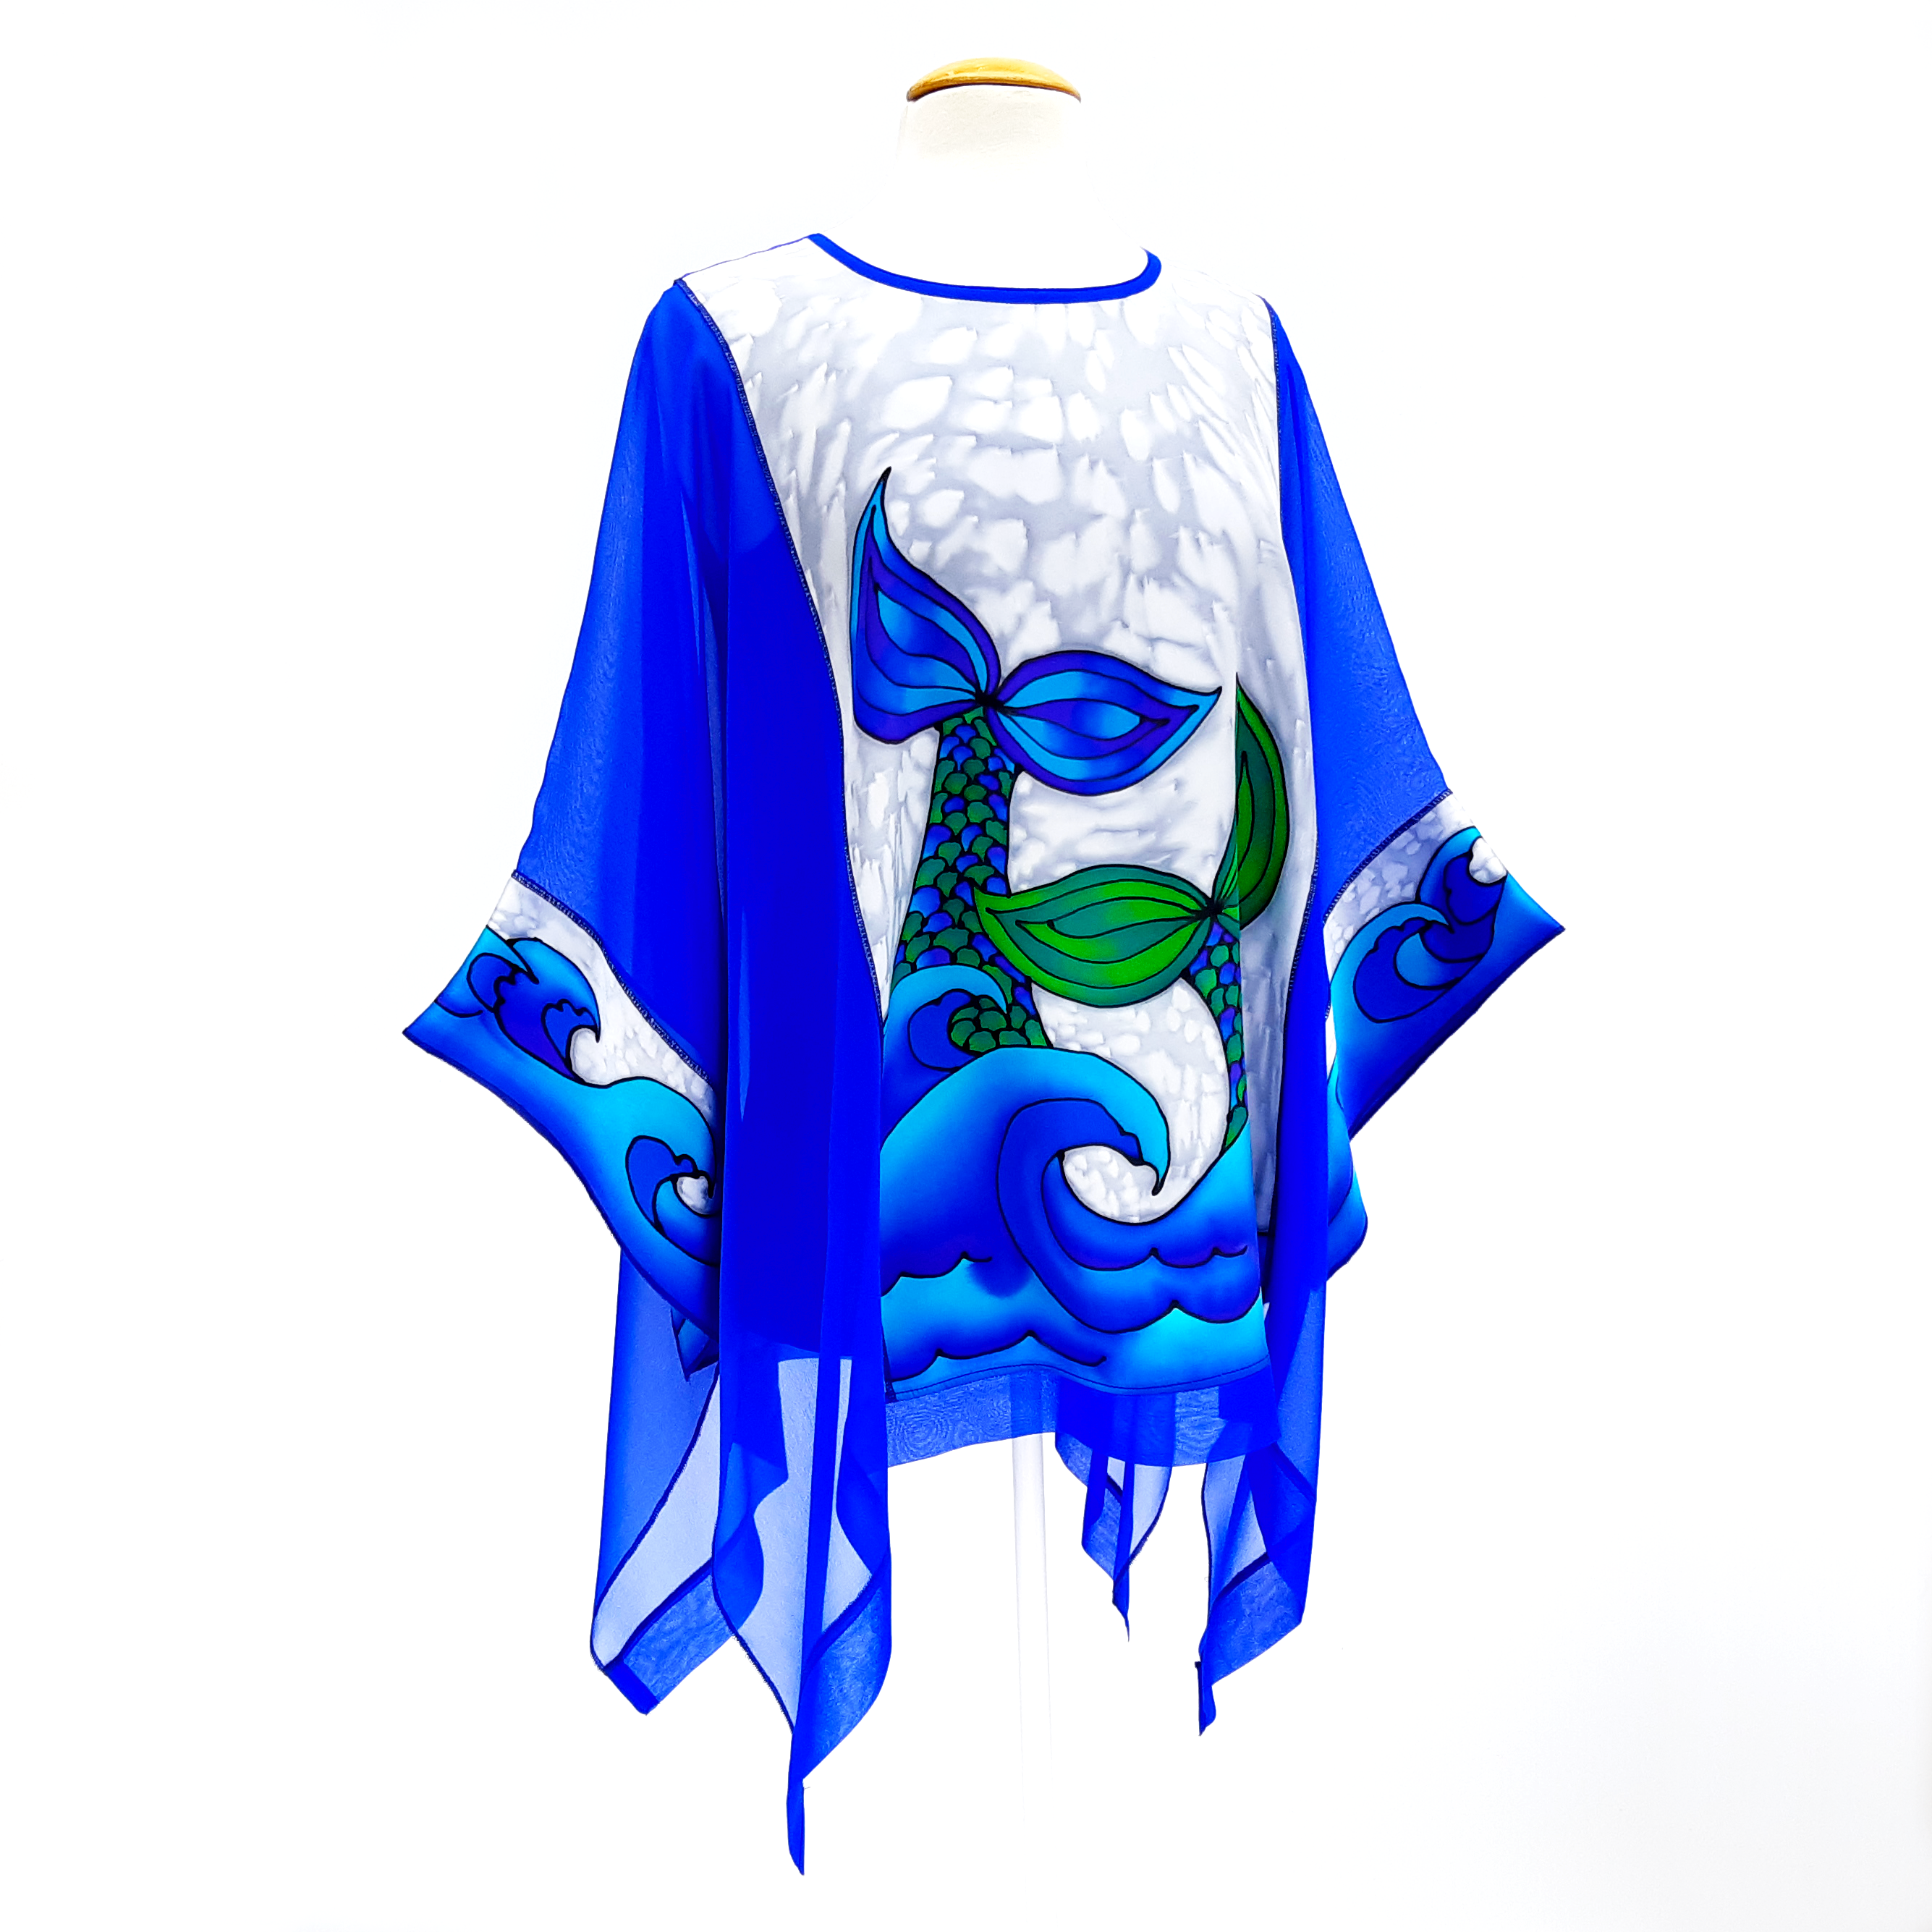 CARIBBEAN SEA Mermaid Tails Painted Silk Royal Blue CAFTAN Top Ladies